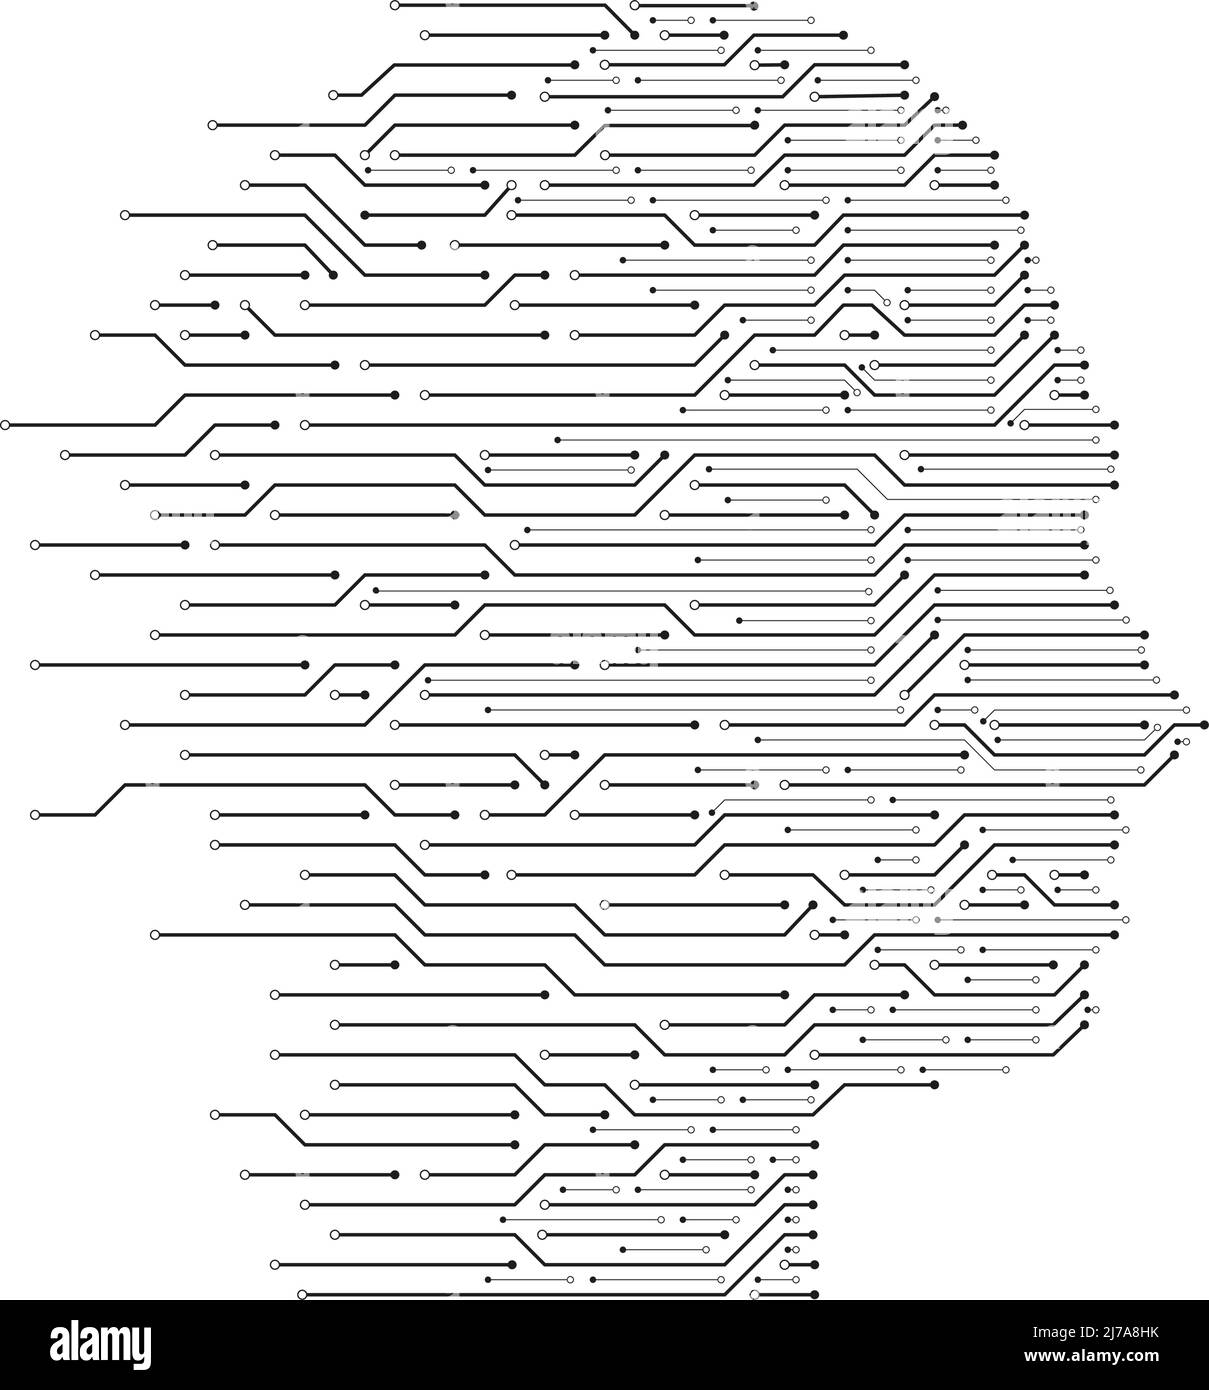 Kopf der künstlichen Intelligenz. Human Data Machine Learning, ai Programmierung Wissenschaft und Cyber Mind Leiterplatte Vektor Illustration Stock Vektor